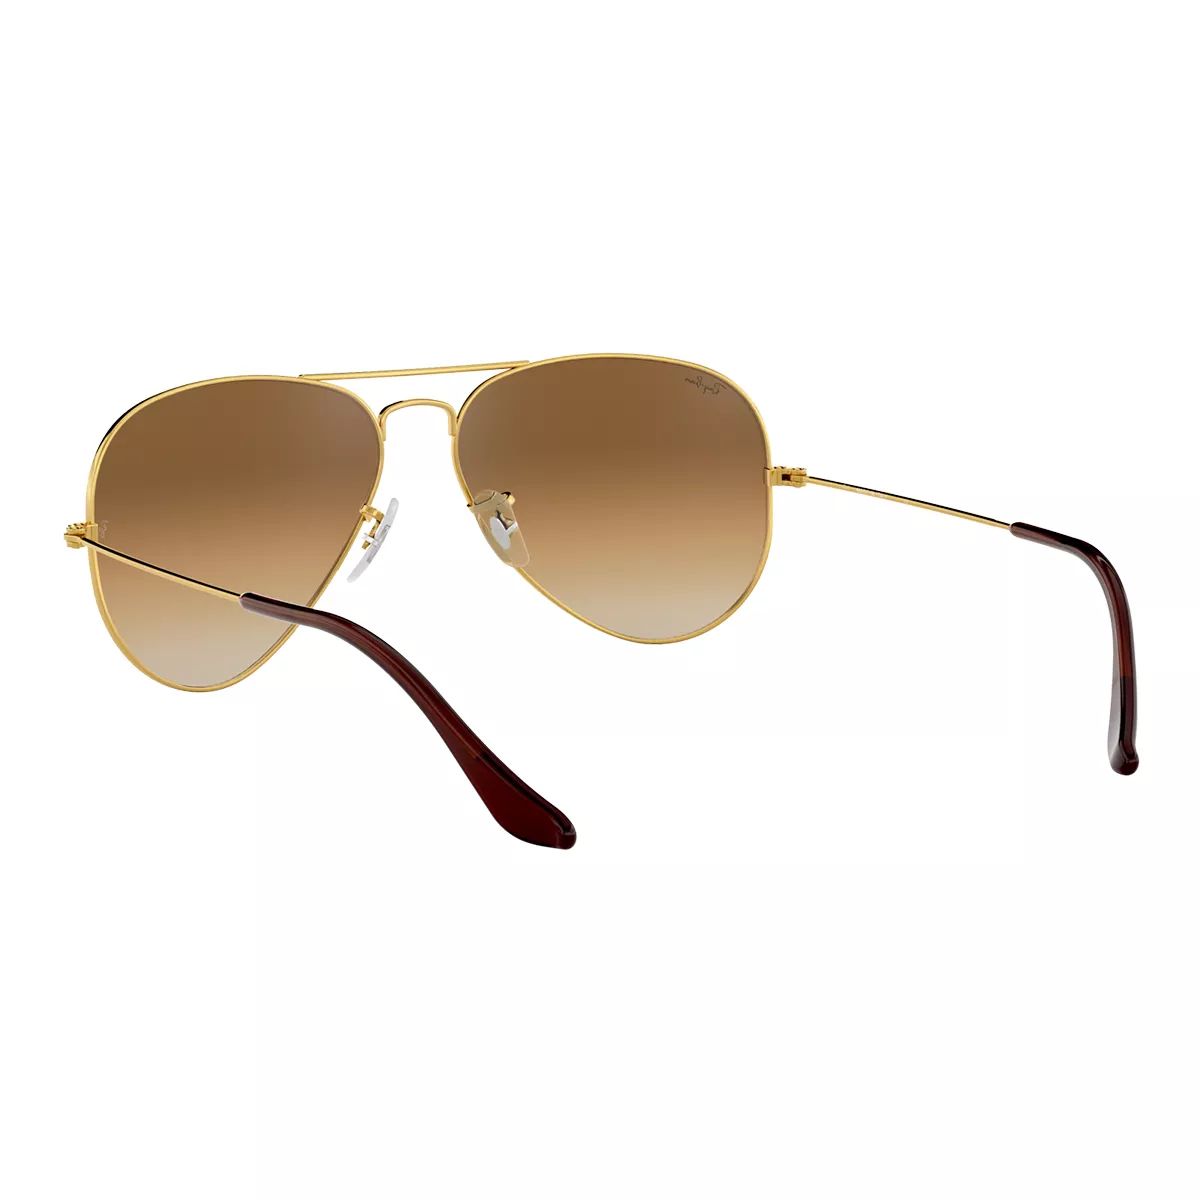 Oakley Men's/Women's Feedback Aviator Sunglasses, Gradient